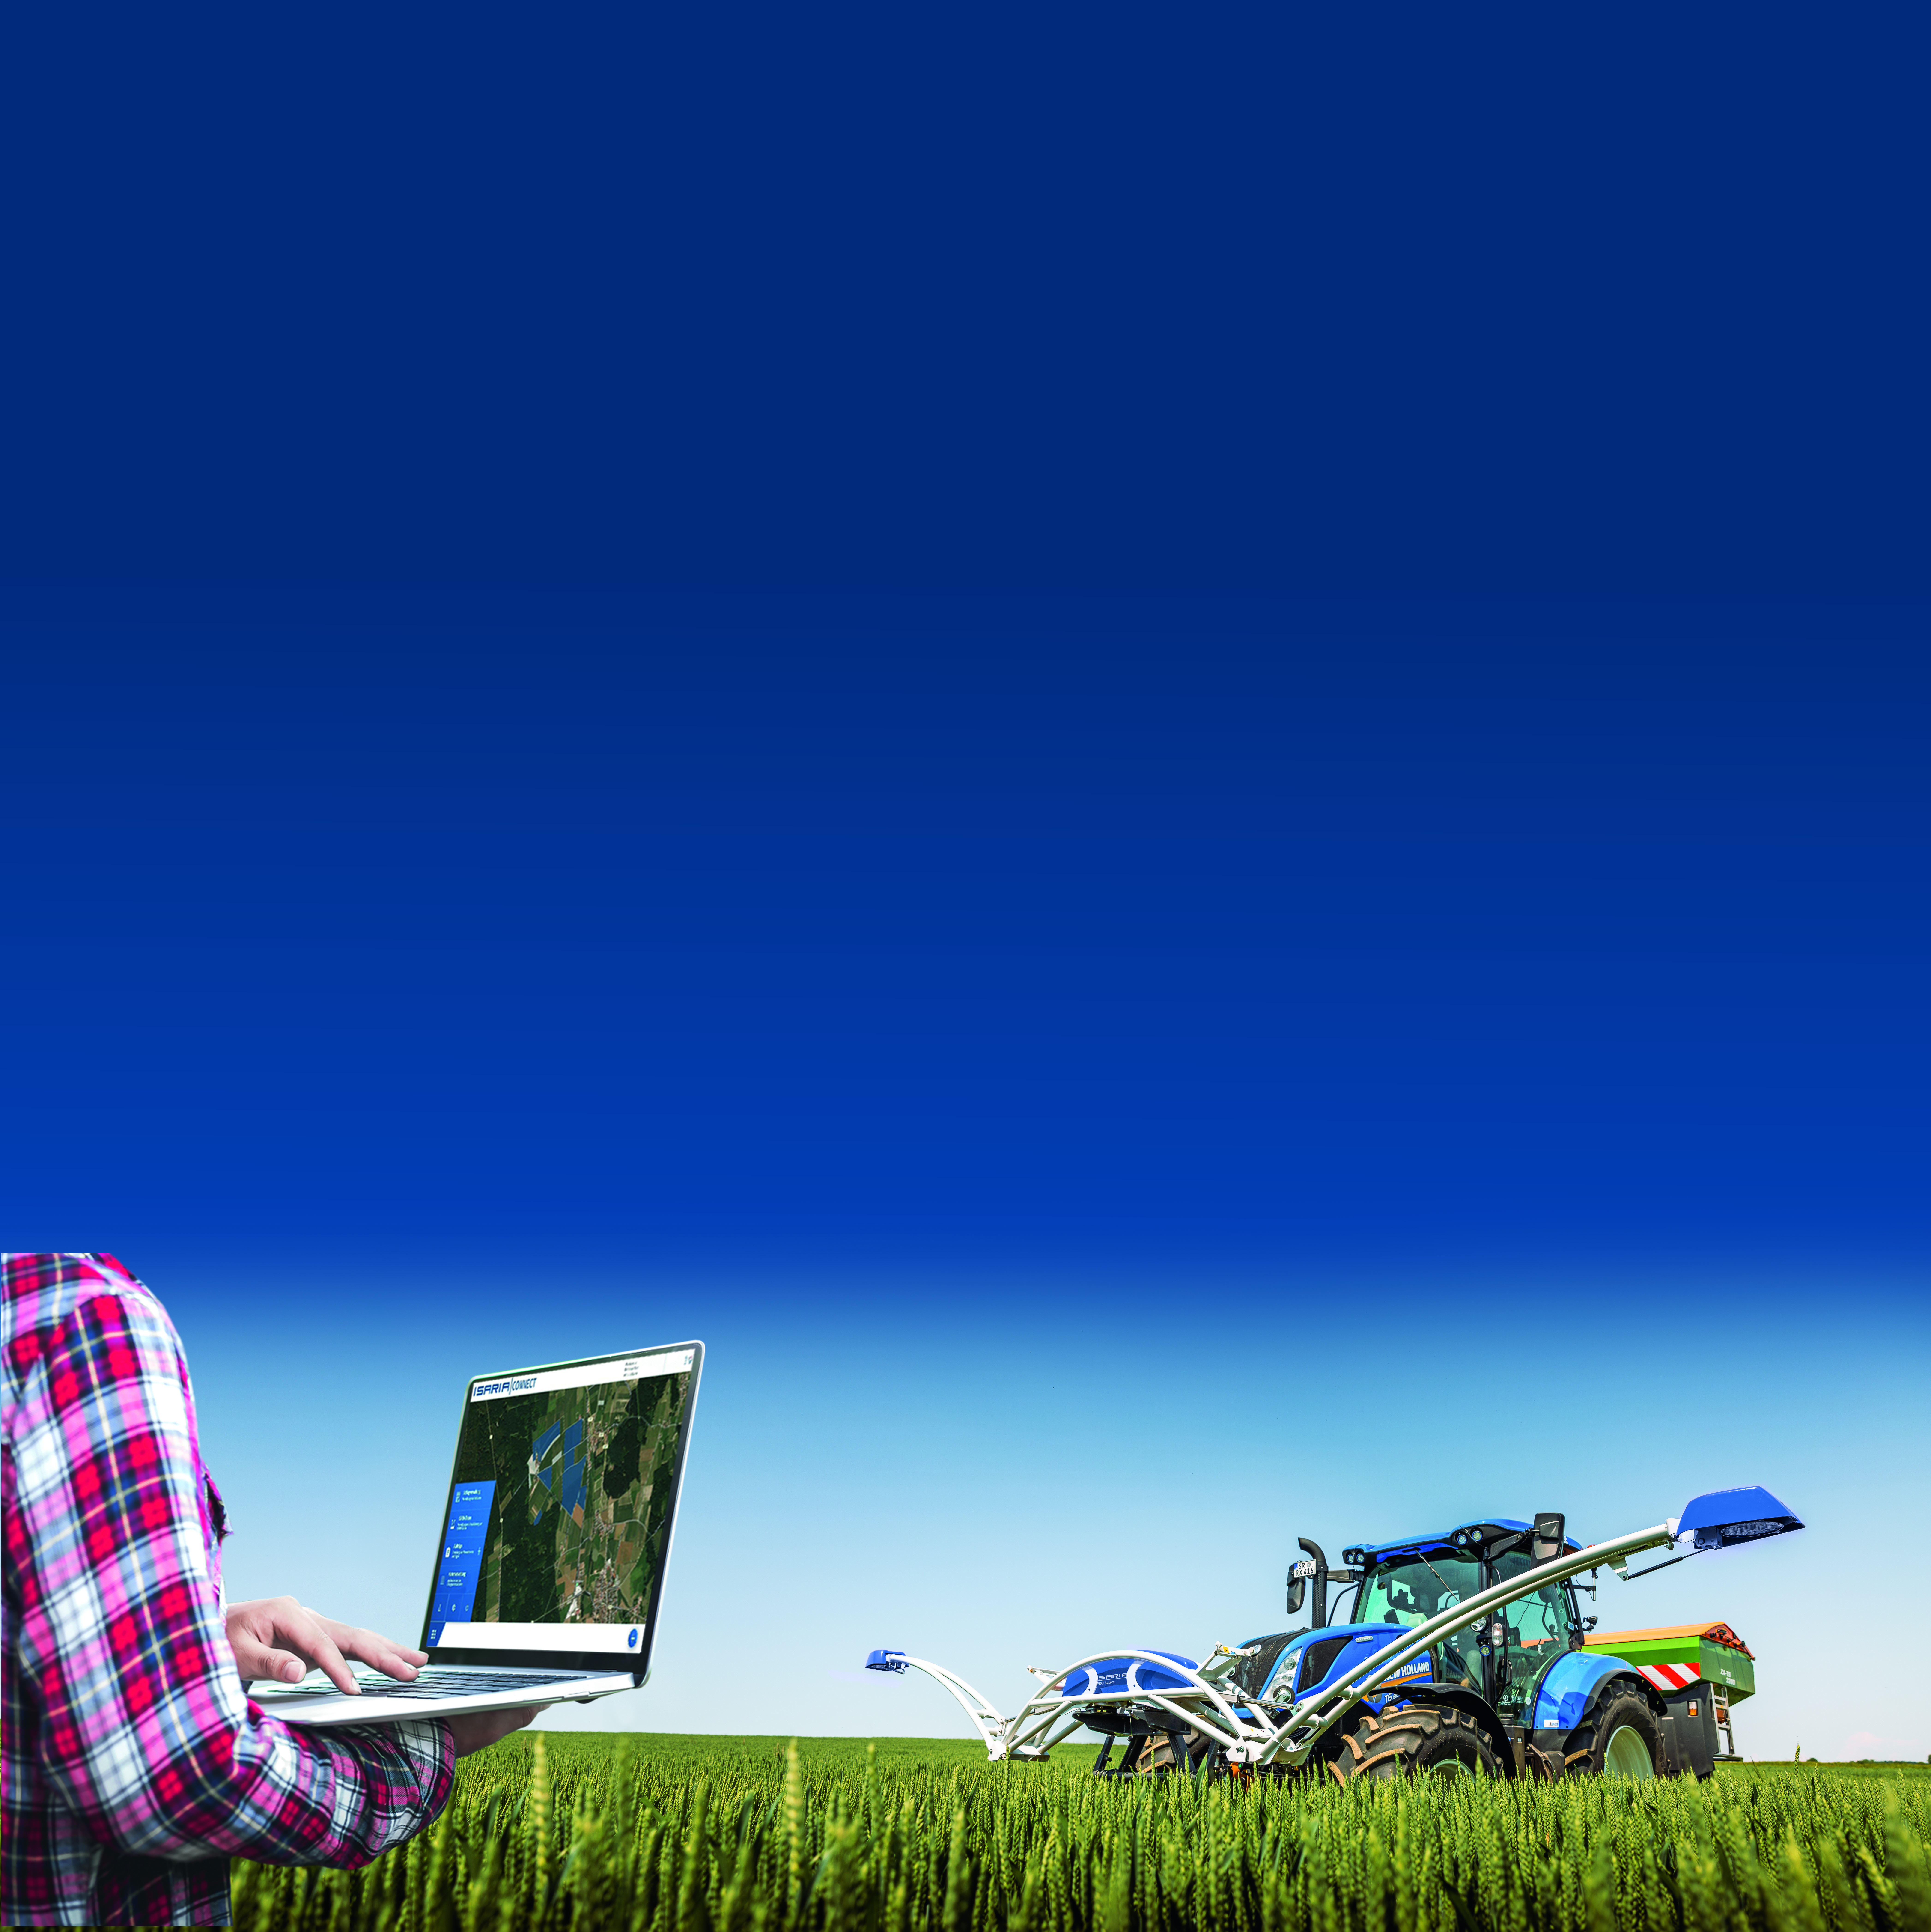 ISARIA CONNECT bietet Landwirten eine zentrale Datenmanagement-Plattform, um teilflächenspezifische Arbeiten effizient zu managen und alle wichtigen Daten im Blick zu haben. Dank der neuen Features ist das System jetzt noch flexibler einsetzbar.  